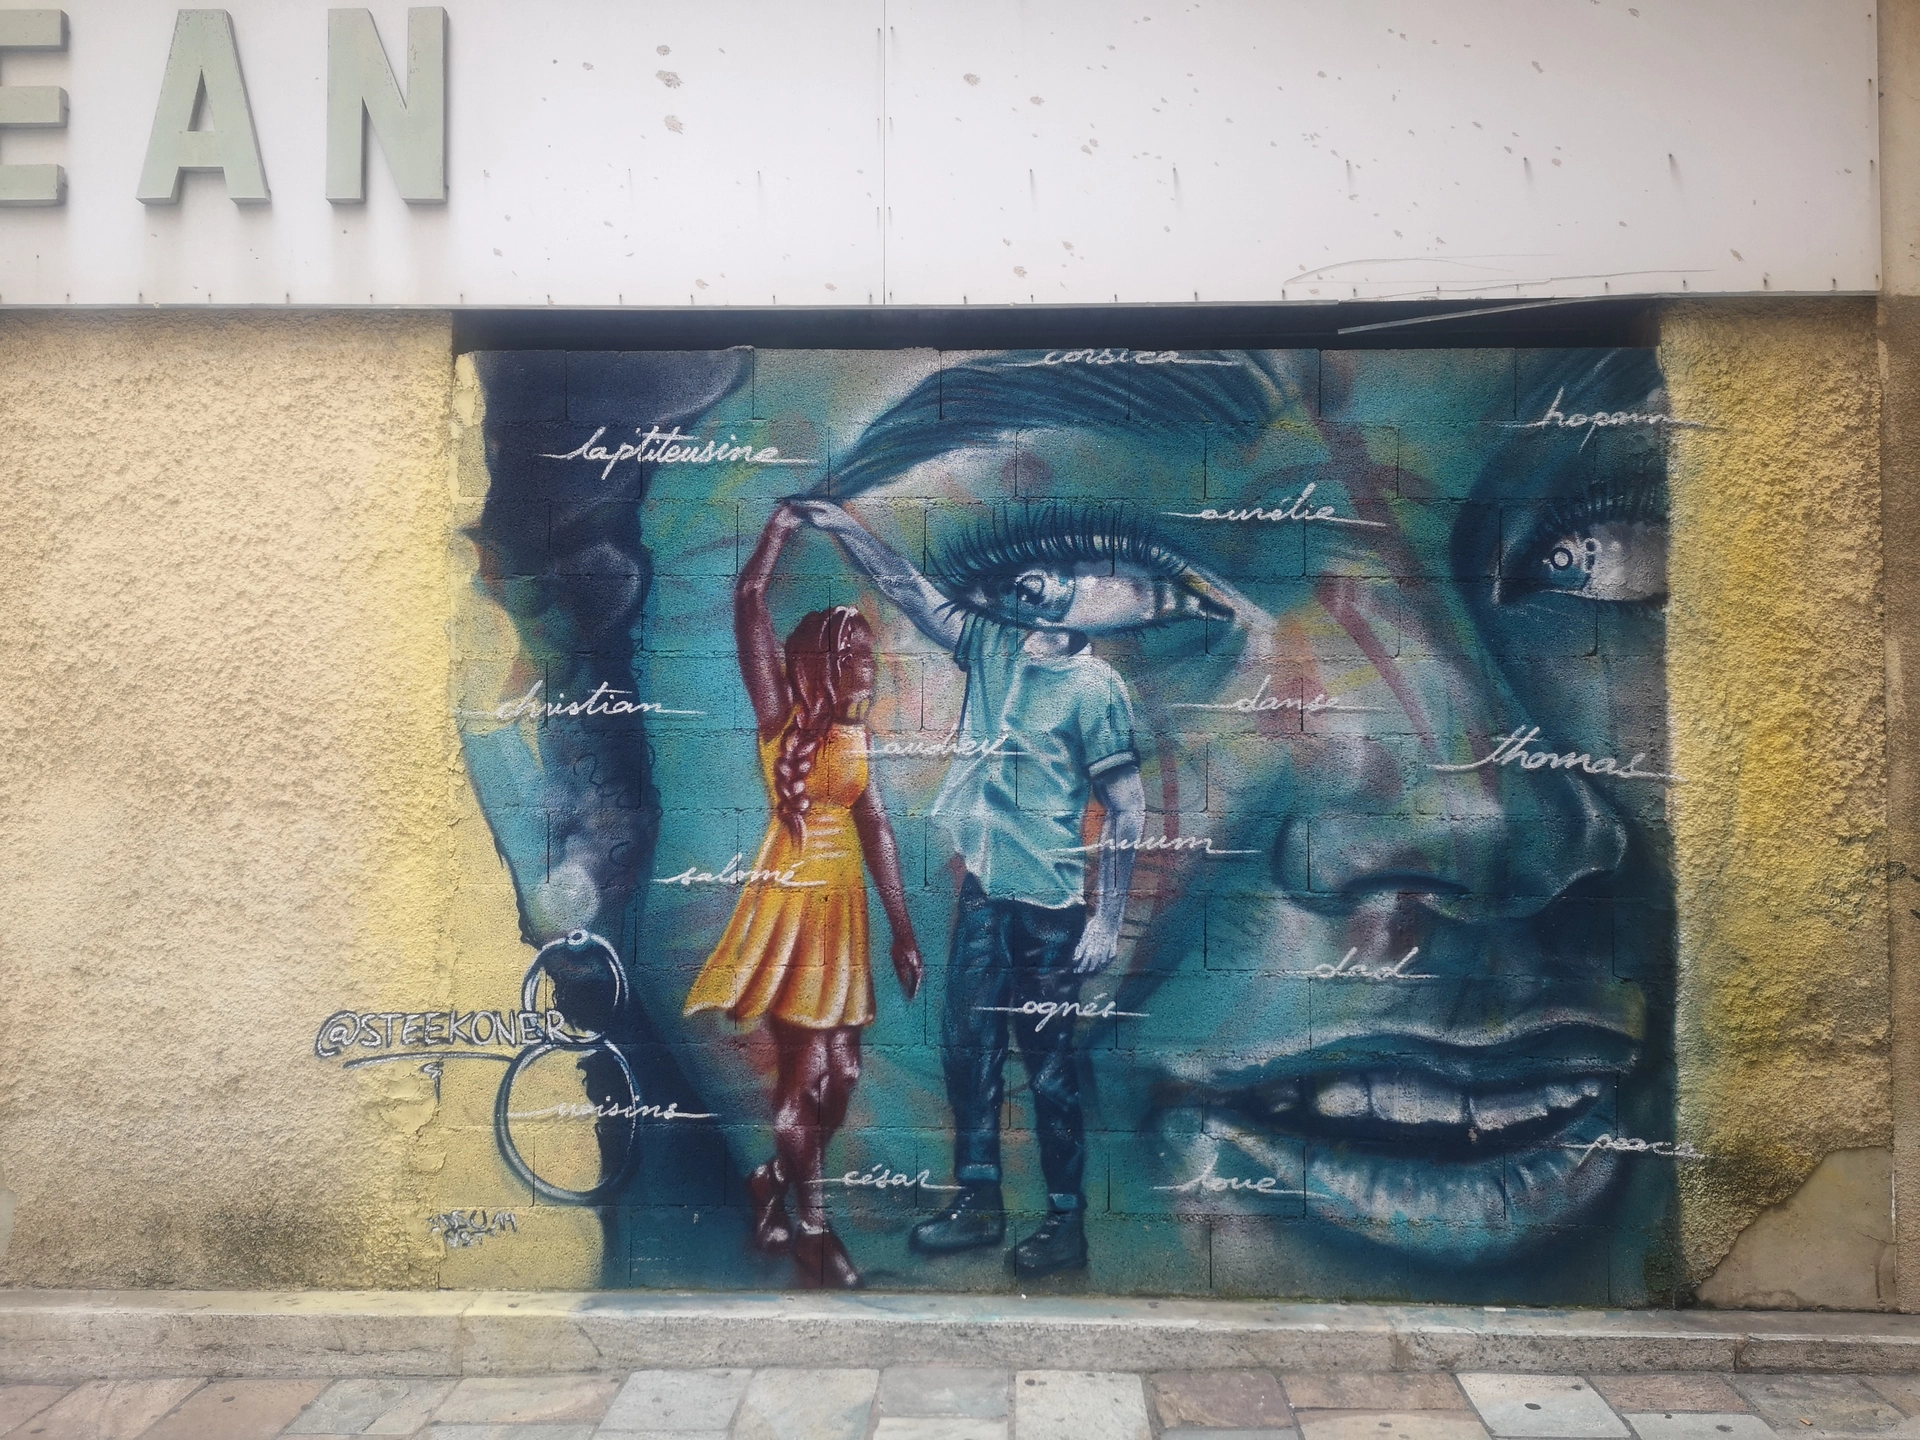 Oeuvre de Street Art réalisée par Steekoner à Bastia